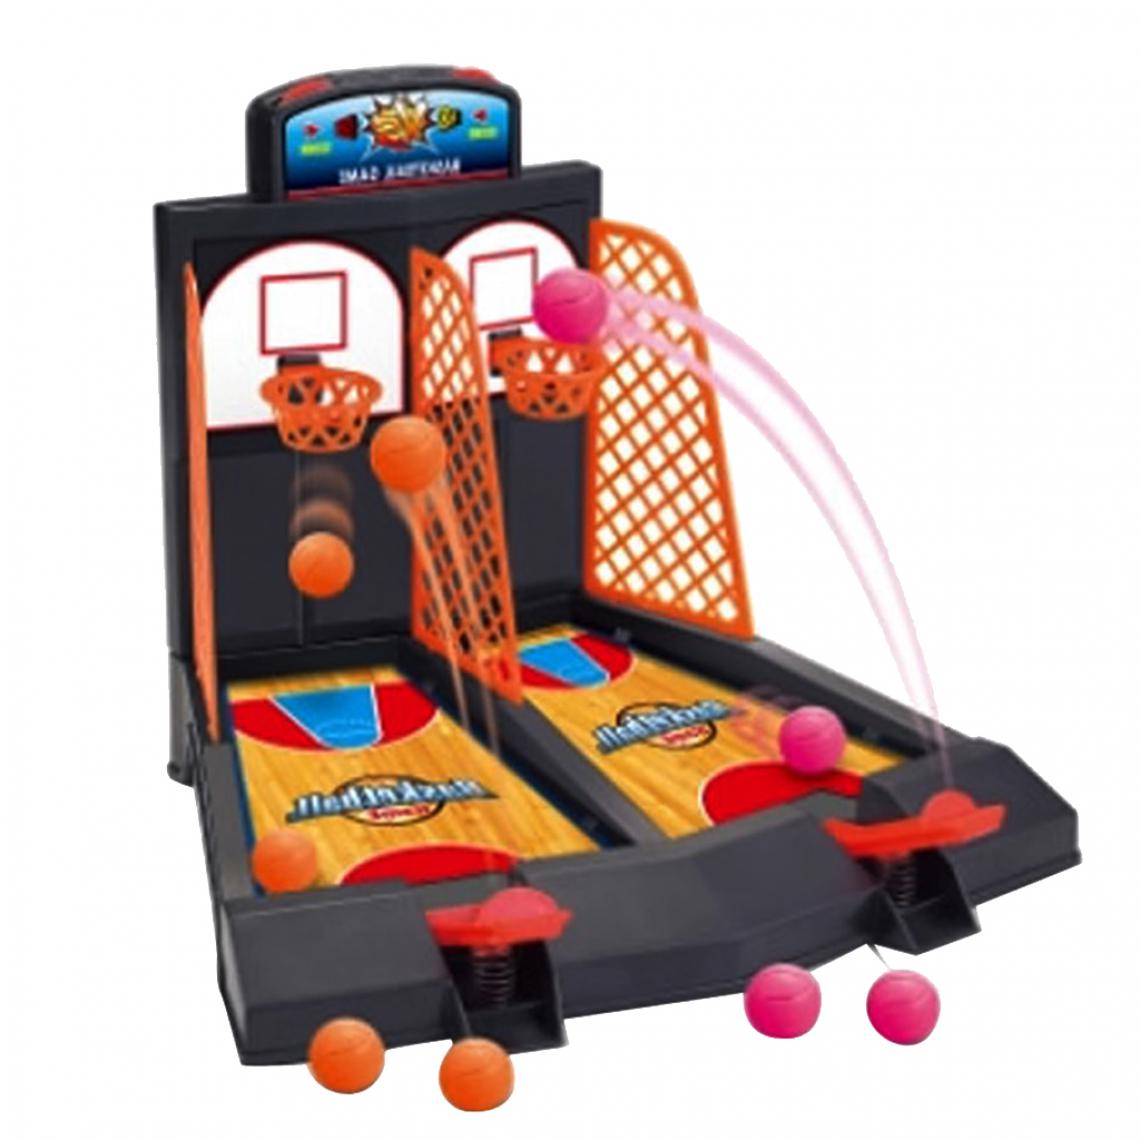 marque generique - Famille Fun Jouets Mini-basket Shoot Jeux De Doigts Pour Les Enfants - Les grands classiques